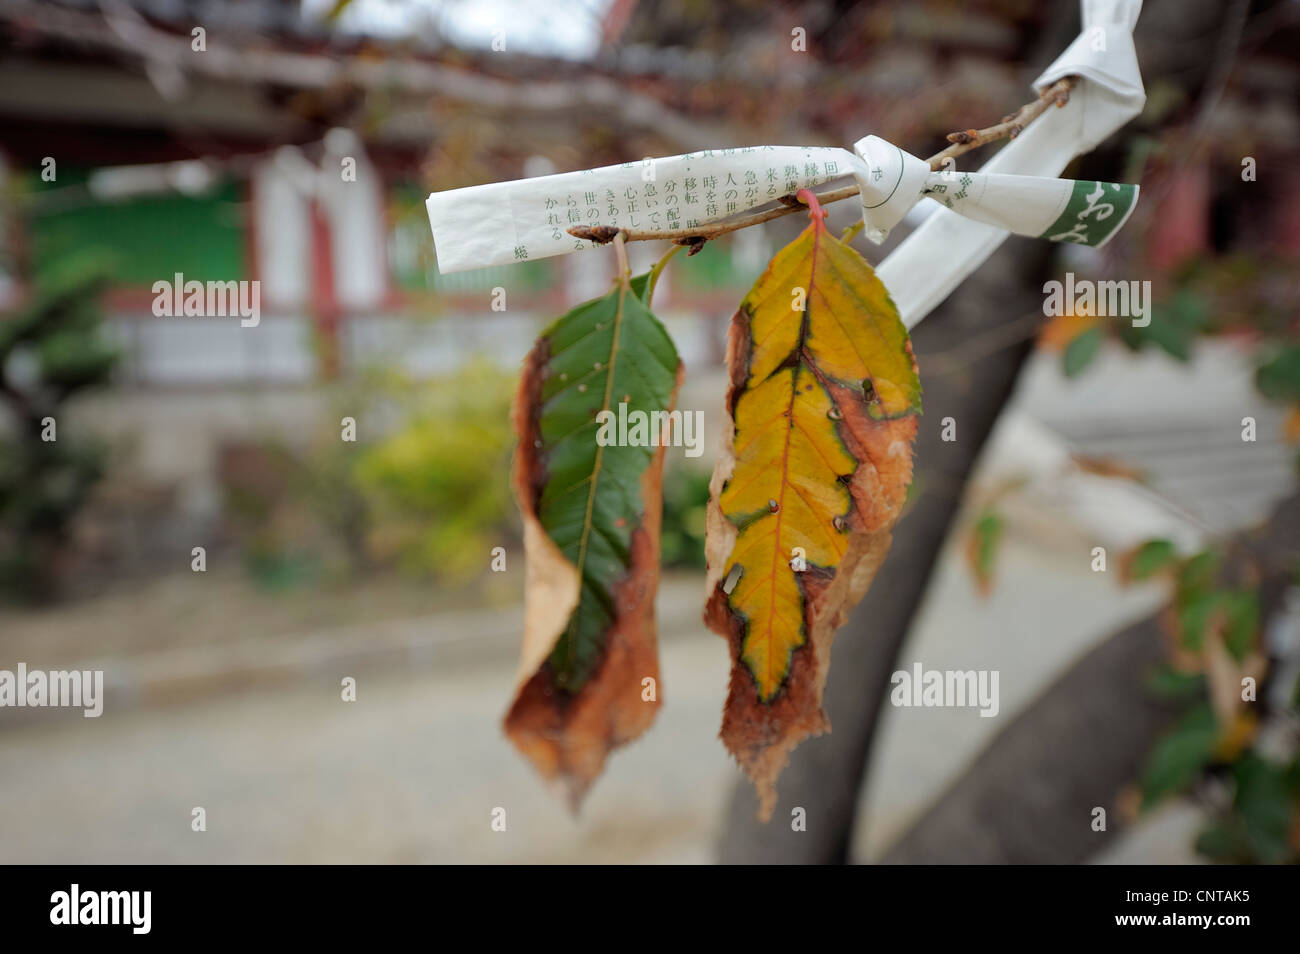 Omikuji striscia di carta annodato su un ramo con sbiadito Foglie di autunno, Giappone Foto Stock